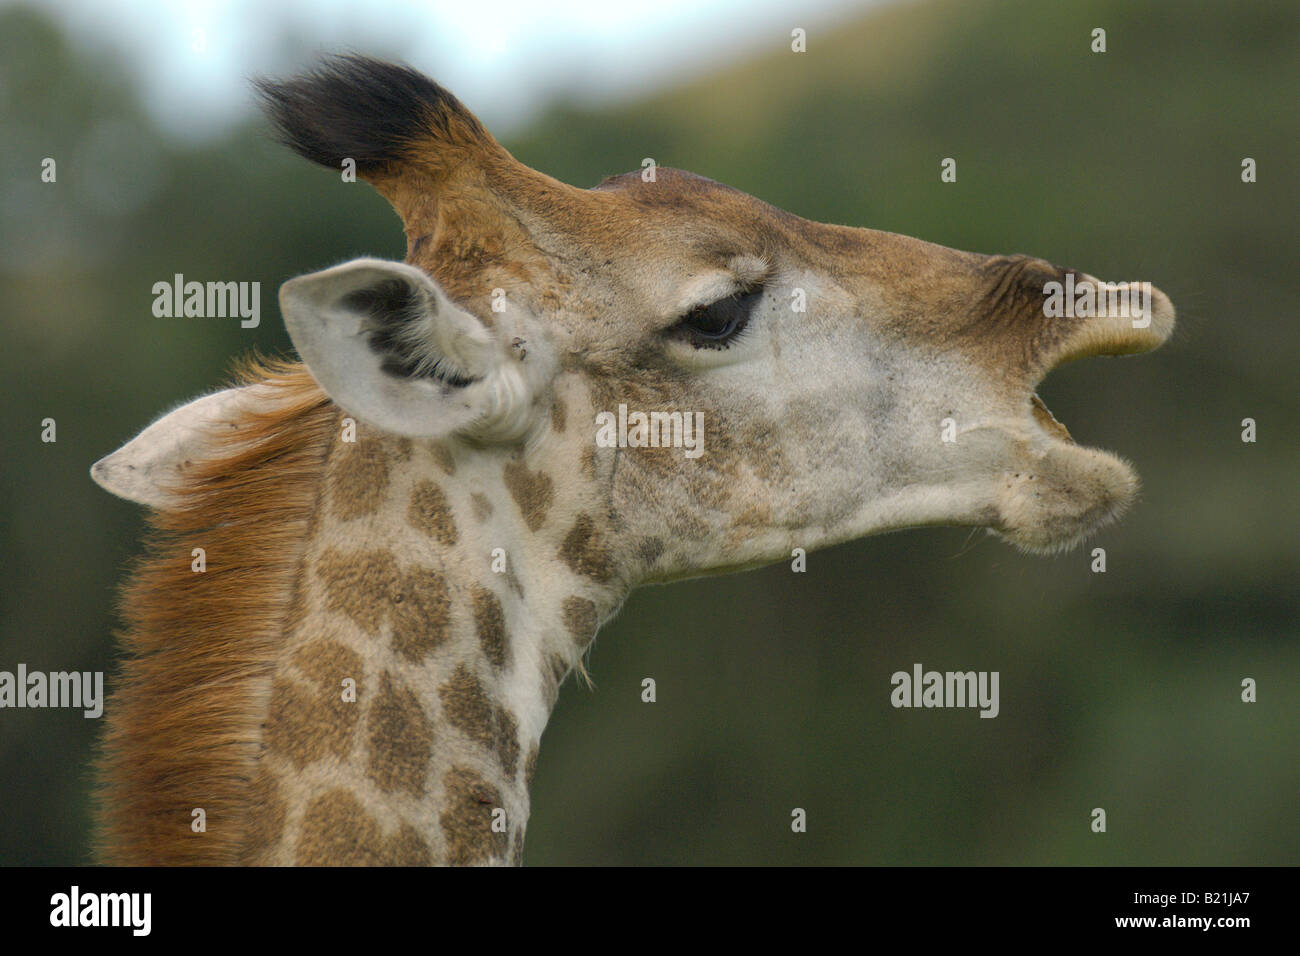 Jirafa Giraffa cameleopardalis grandes mamíferos africanos más alto cuello cuello largo gran corazón grandes ojos y cabeza explorador navega en t Foto de stock